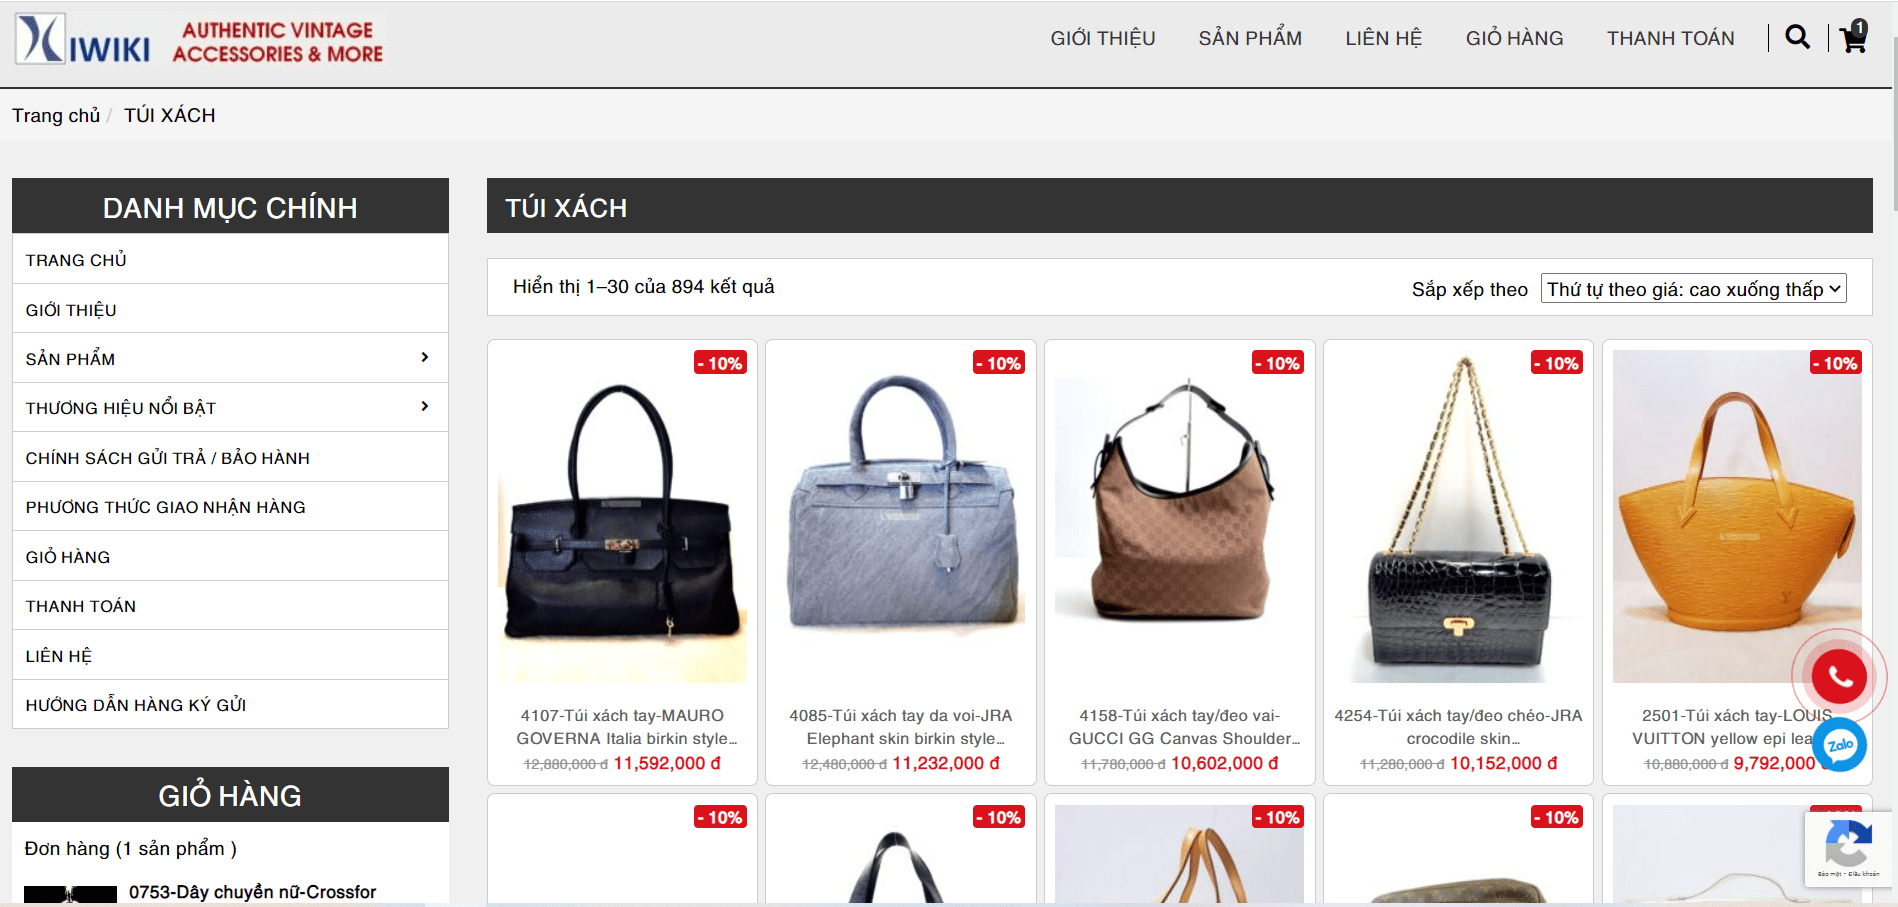 Mua túi xách hàng hiệu Dior secondhand chính hãng tại Kiwiki